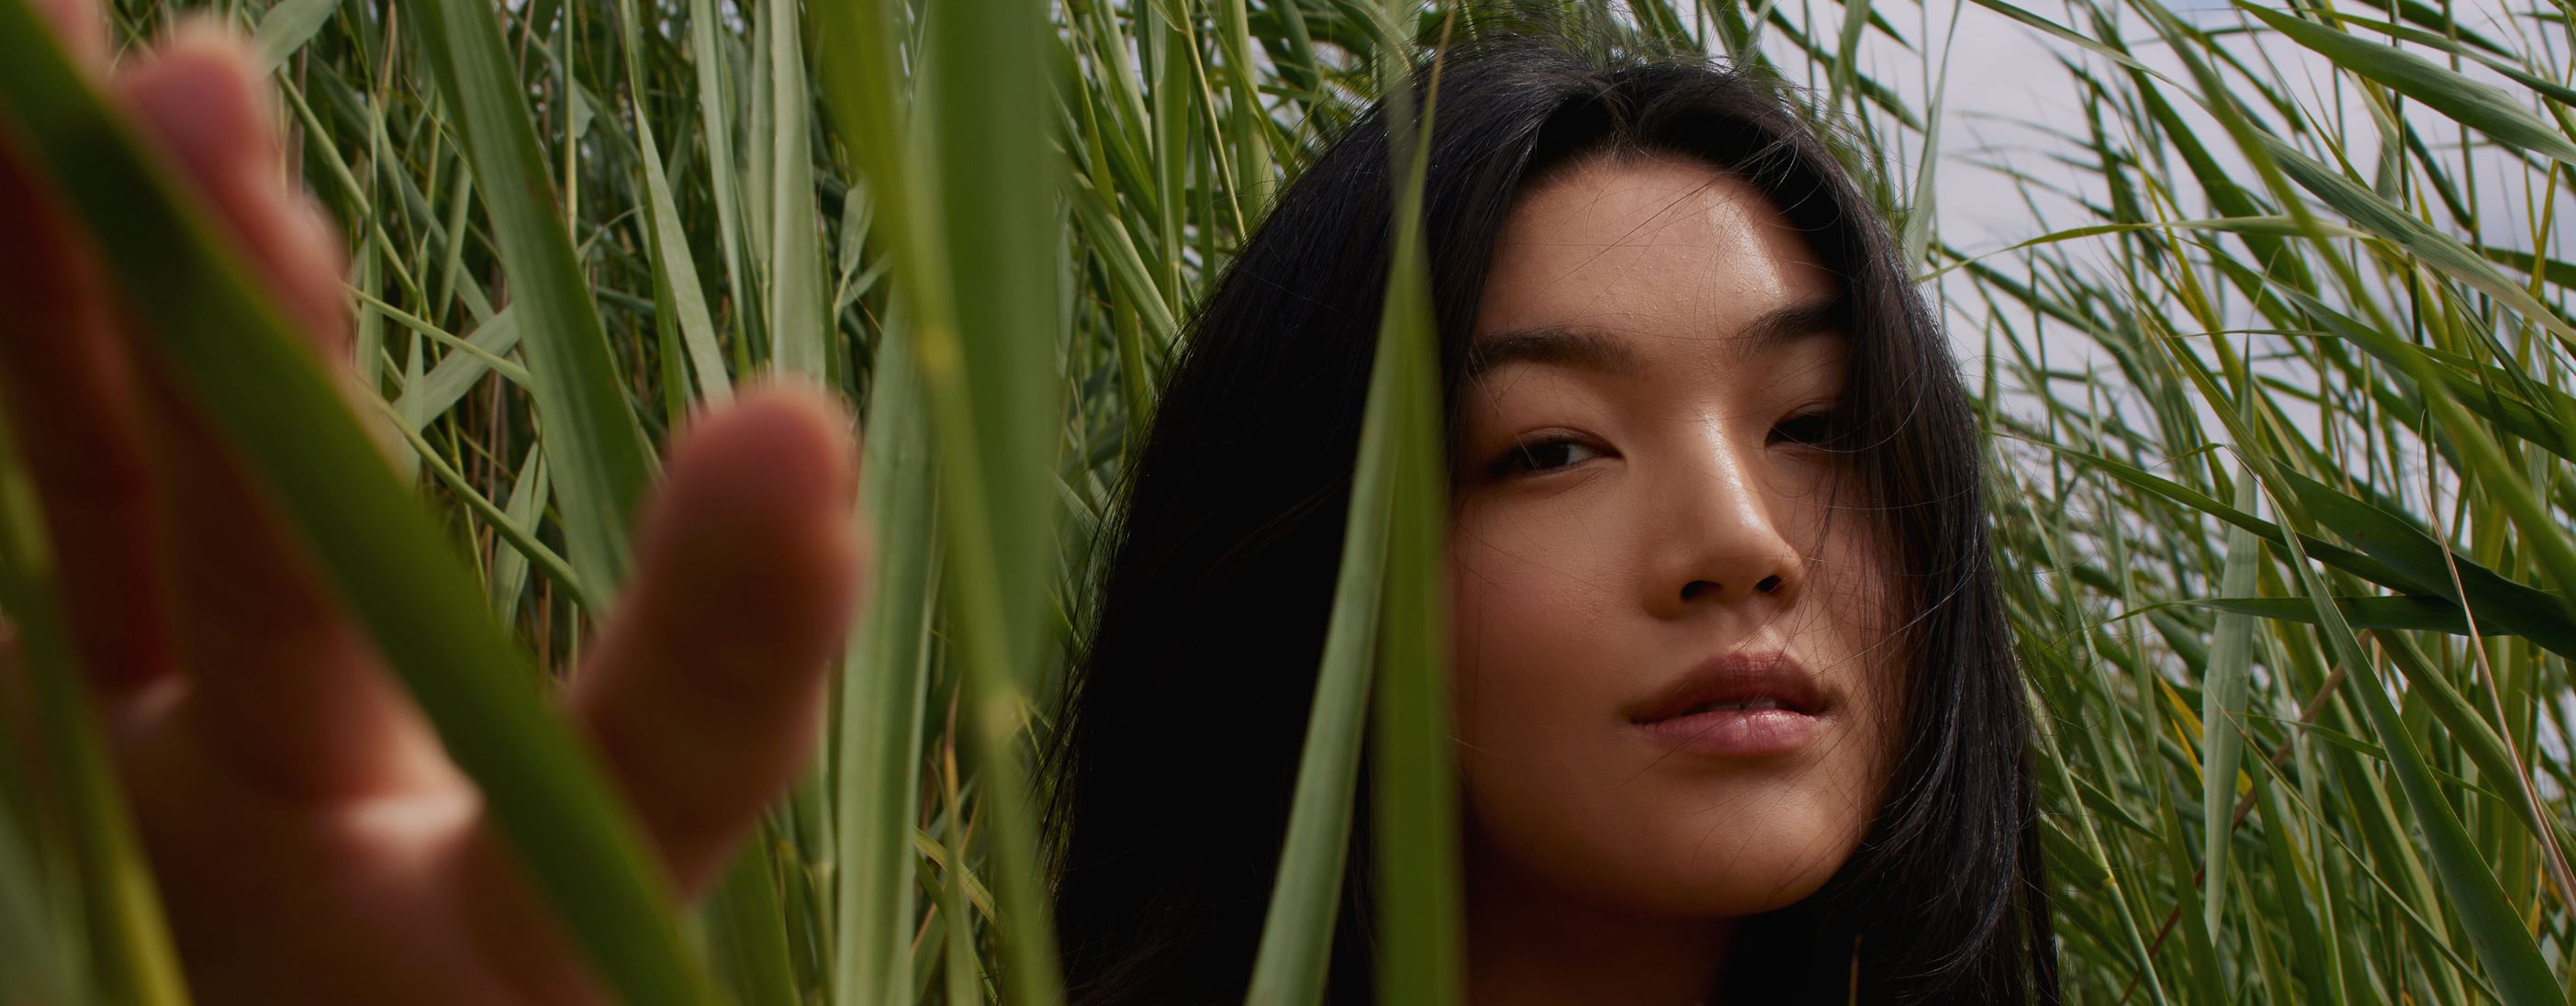 asiatisk flicka som står i ett grönt fält